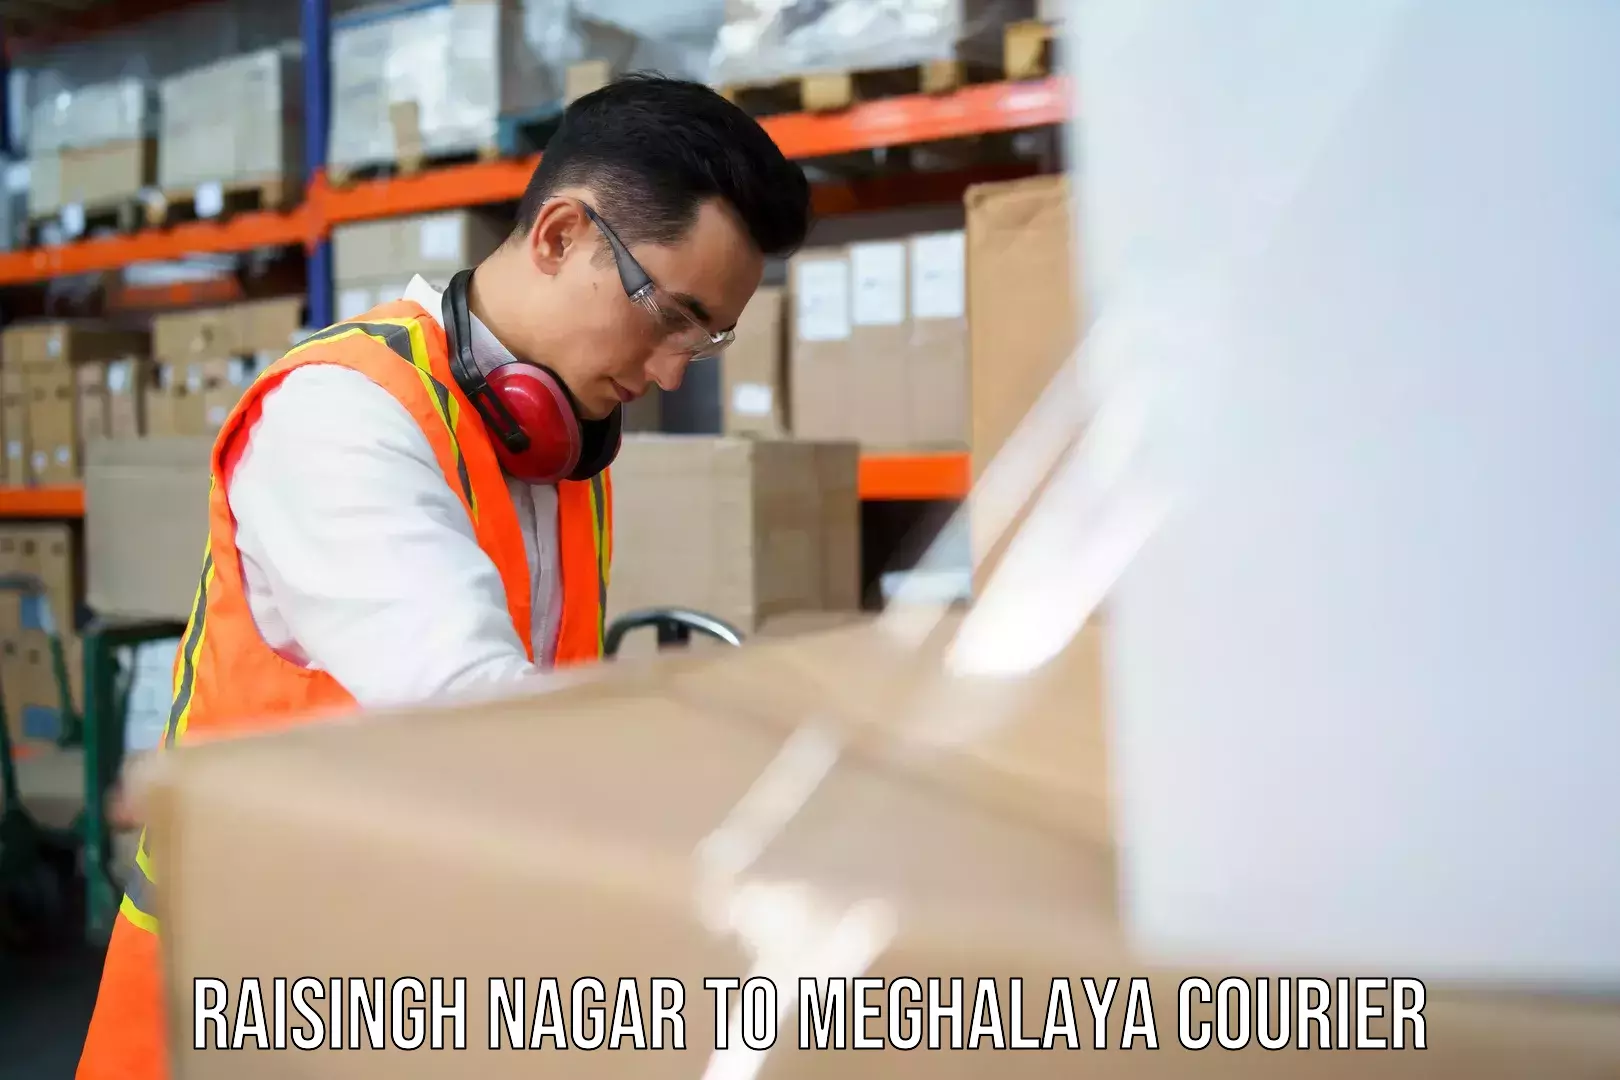 Holiday shipping services Raisingh Nagar to Meghalaya